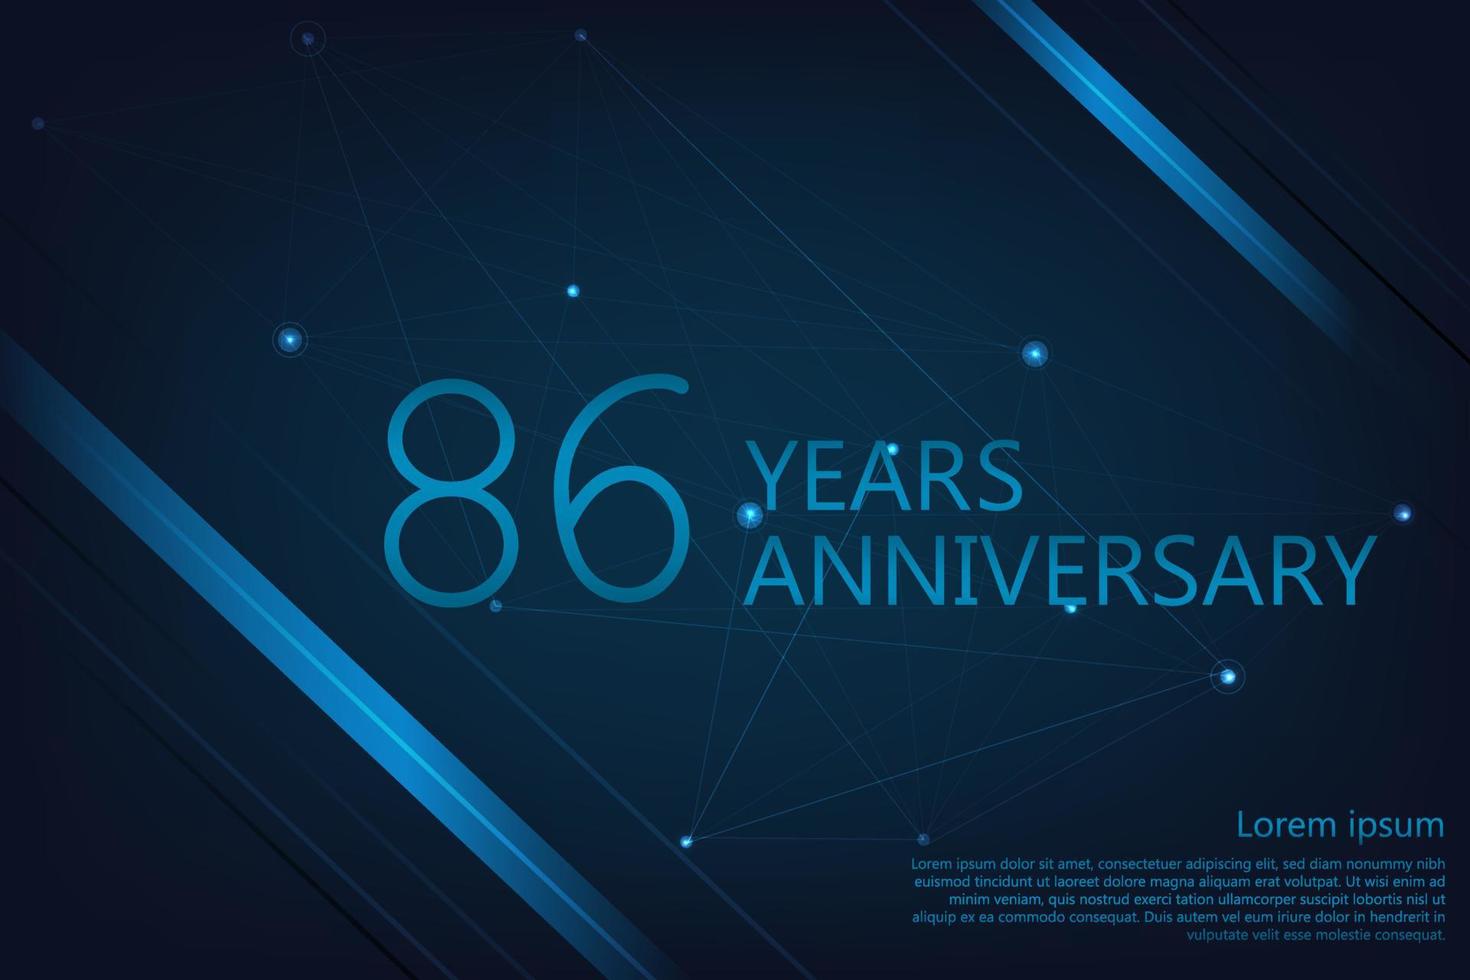 Bannière géométrique anniversaire 86 ans. modèle d'affiche pour célébrer la fête d'anniversaire. illustration vectorielle vecteur